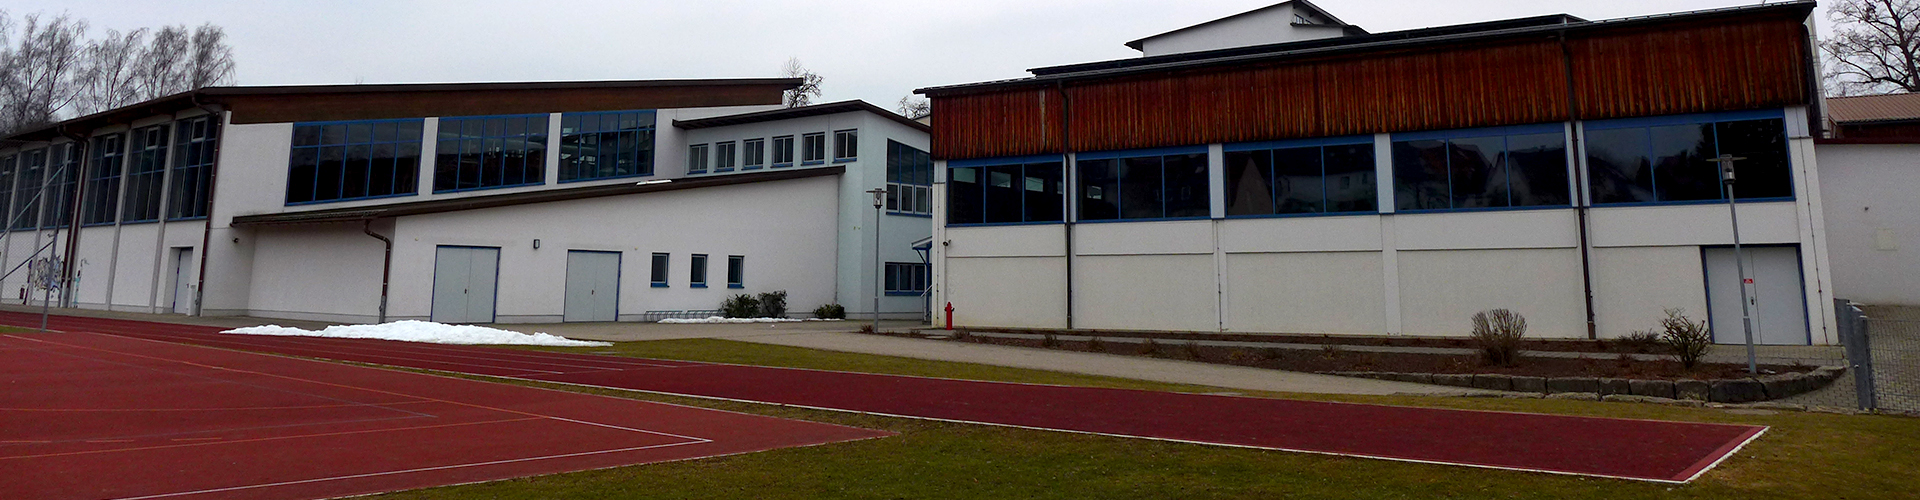 Grund- und Mittelschule Velden, Blick vom Sportplatz auf Turnhalle und Schulgebäude